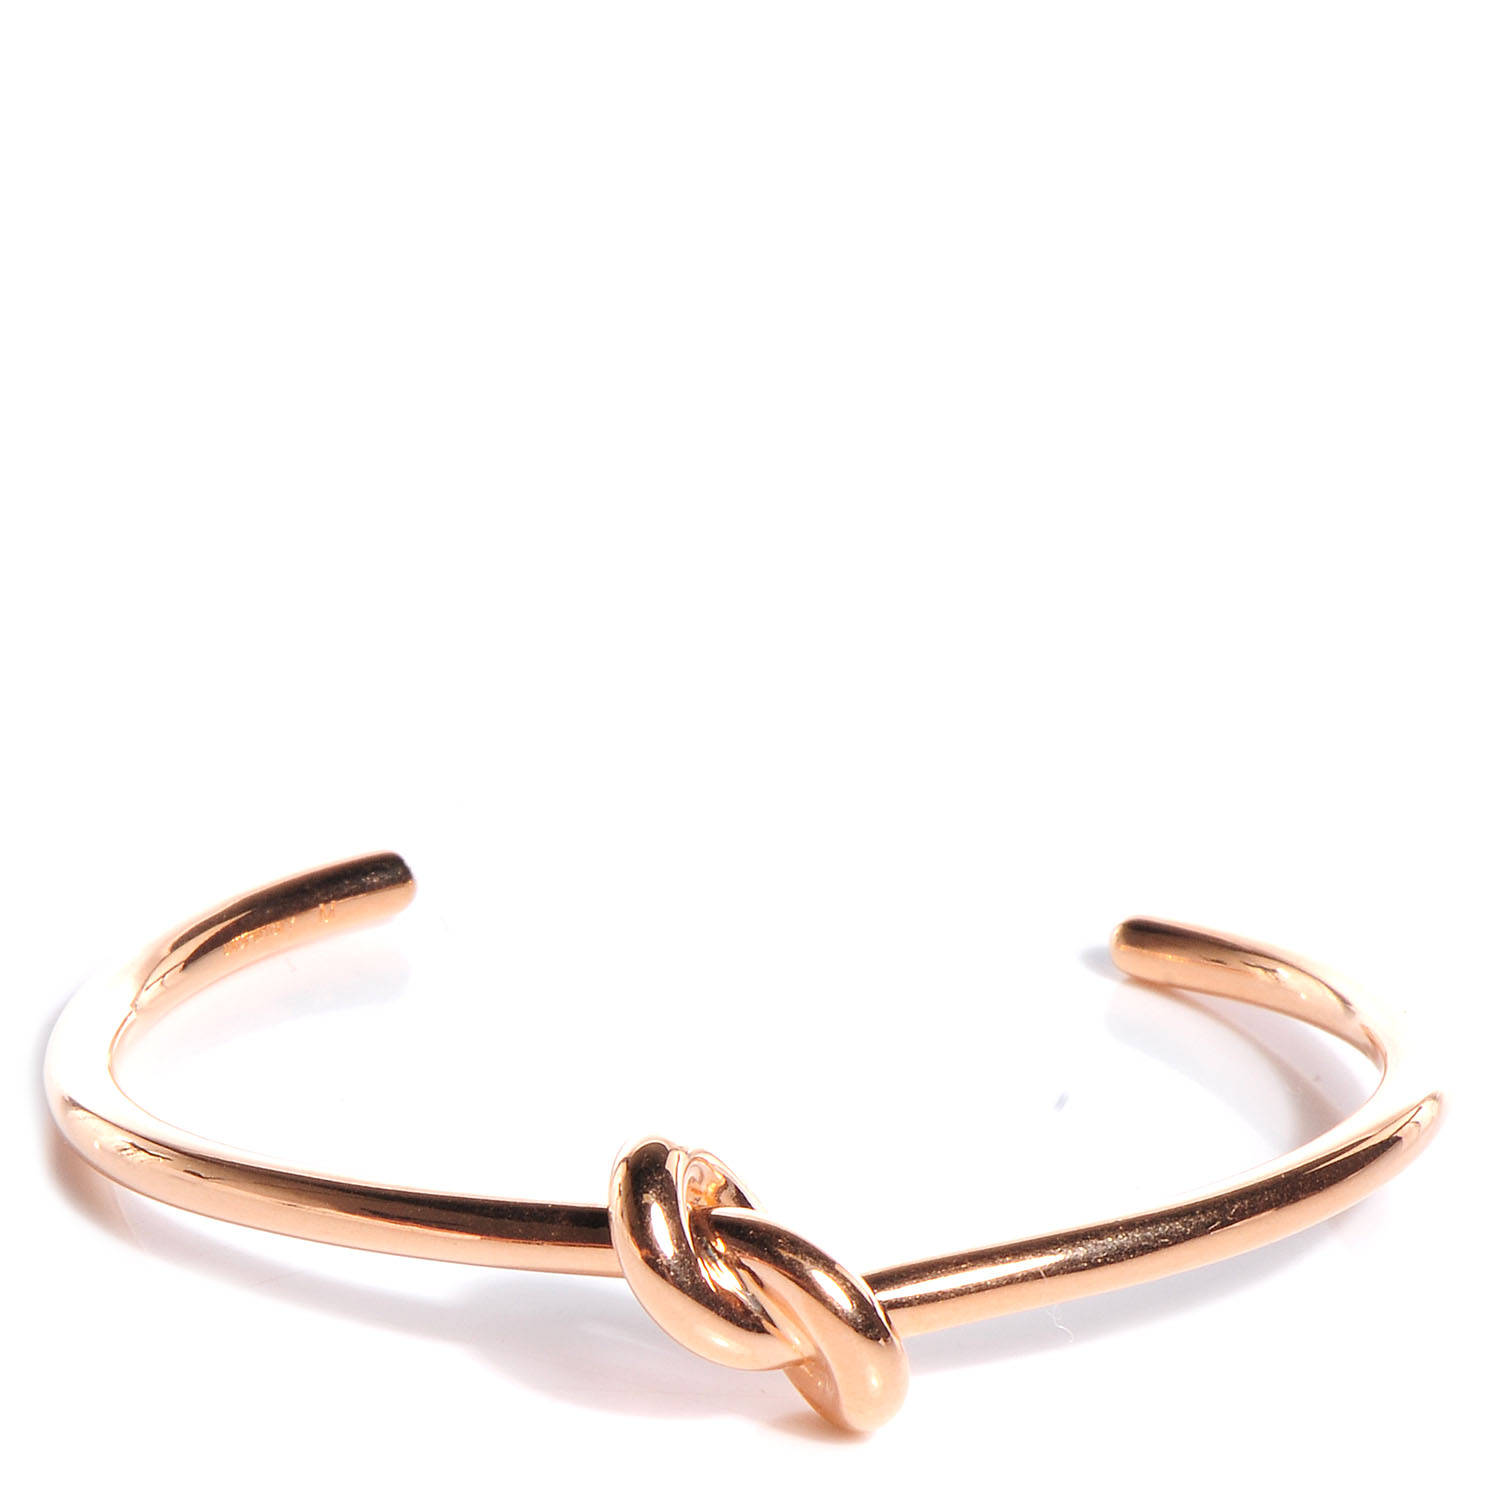 Celine Knot Bracelet Flash Sales, 60% OFF | www.ingeniovirtual.com